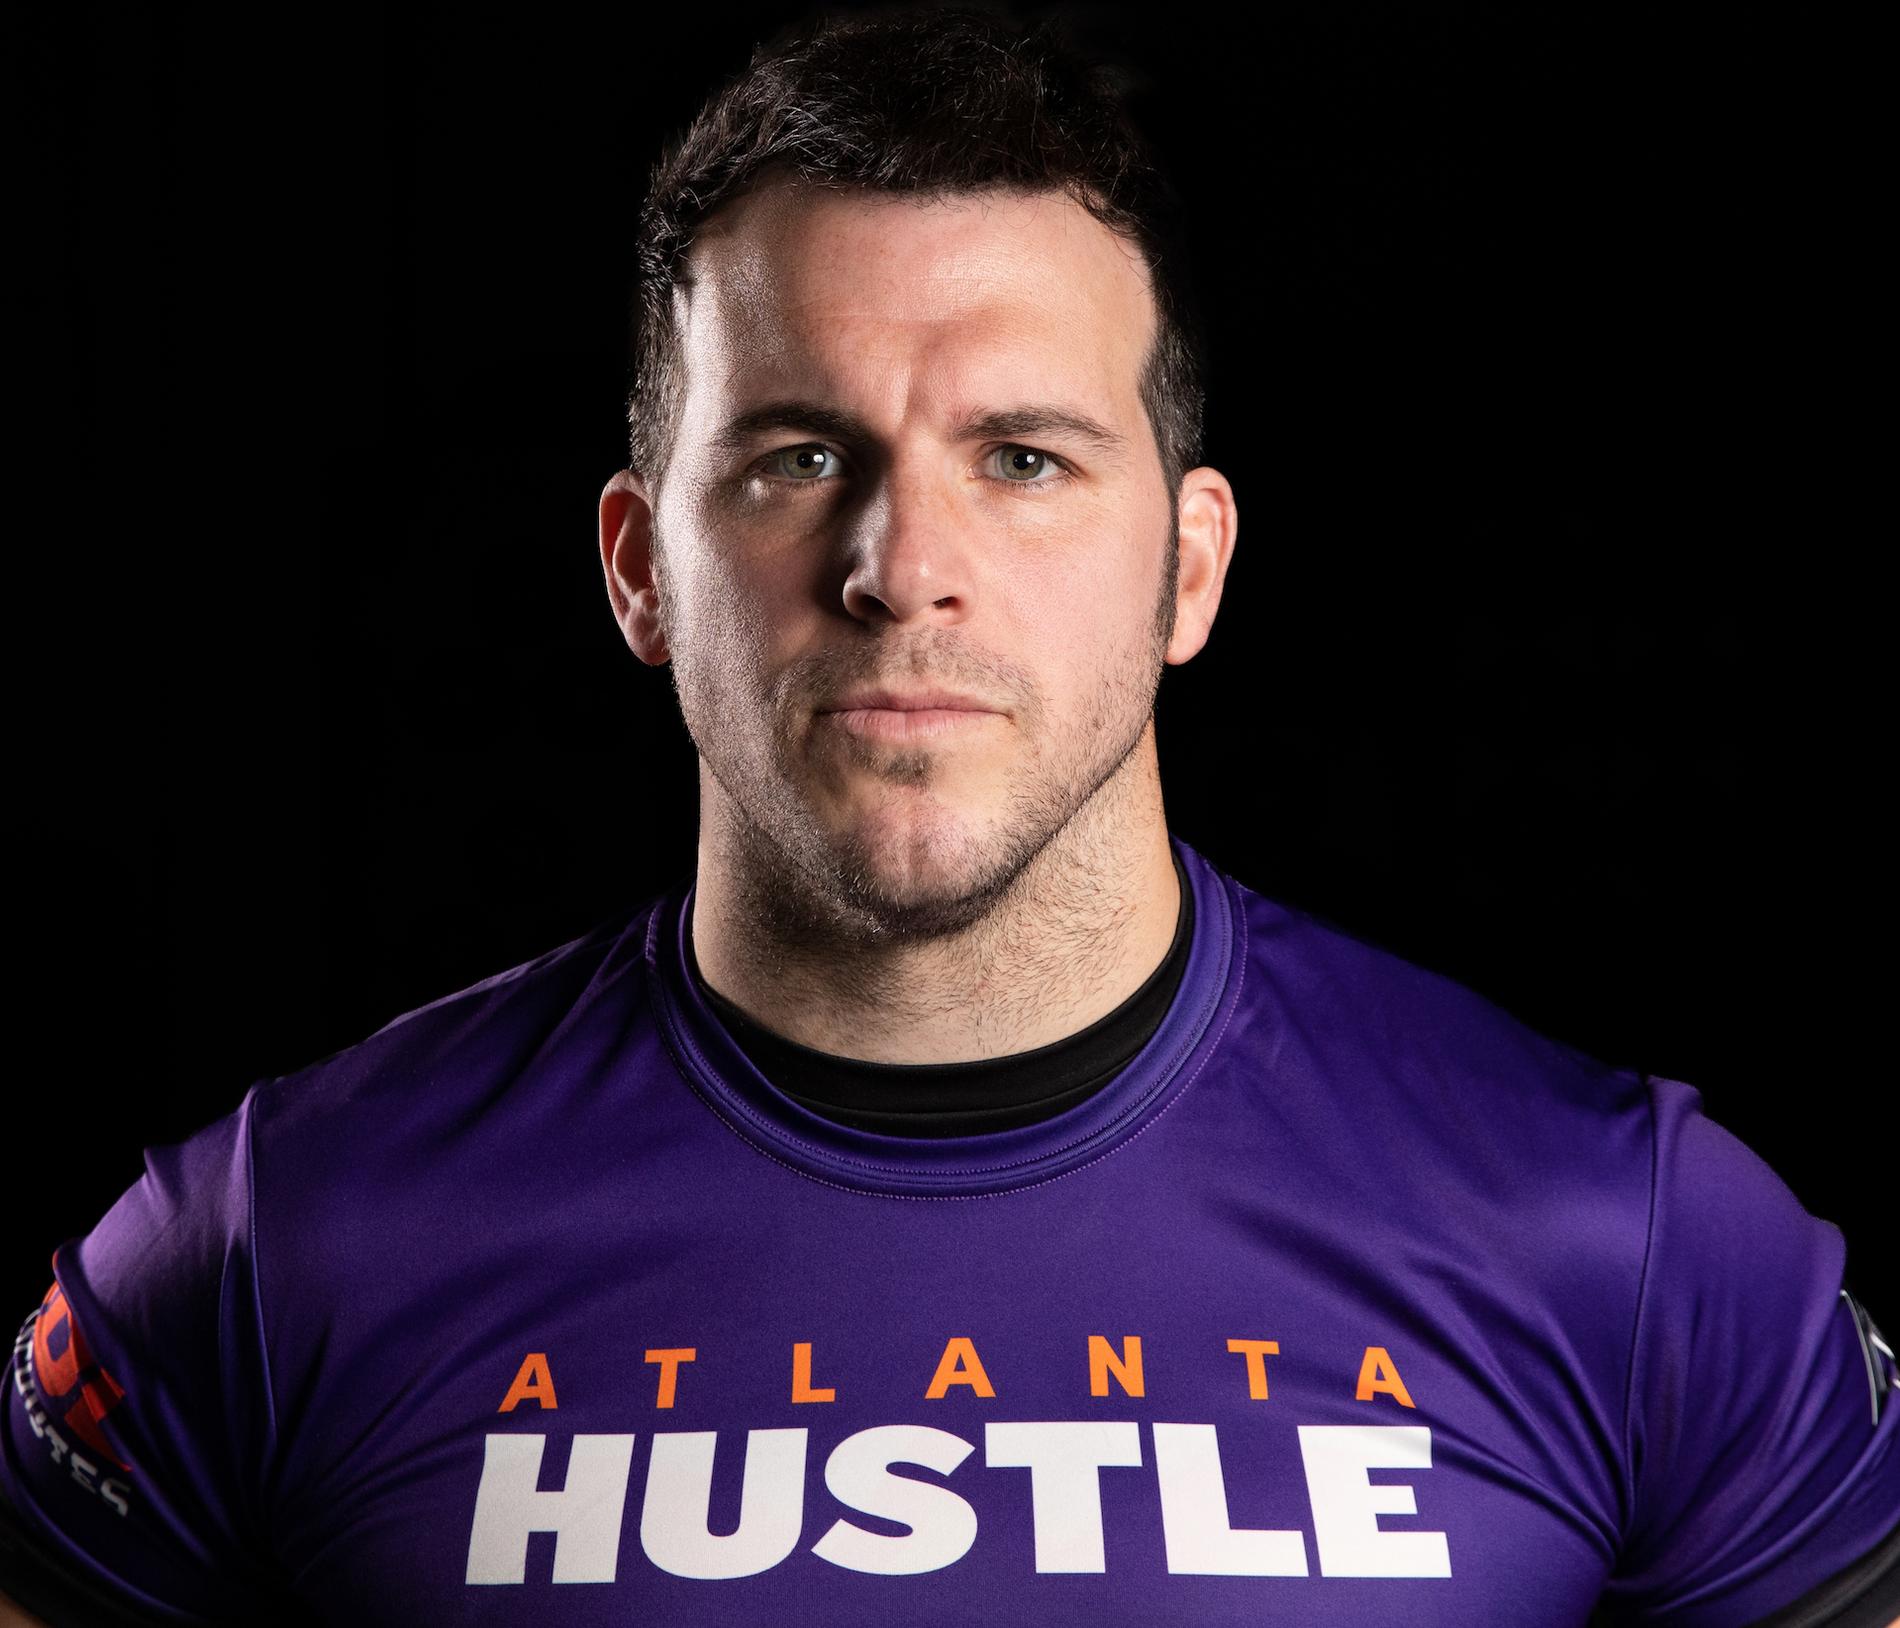 Karl Ekwurtzel är professionell ultimate frisbee-spelare i Atlanta Hustle.